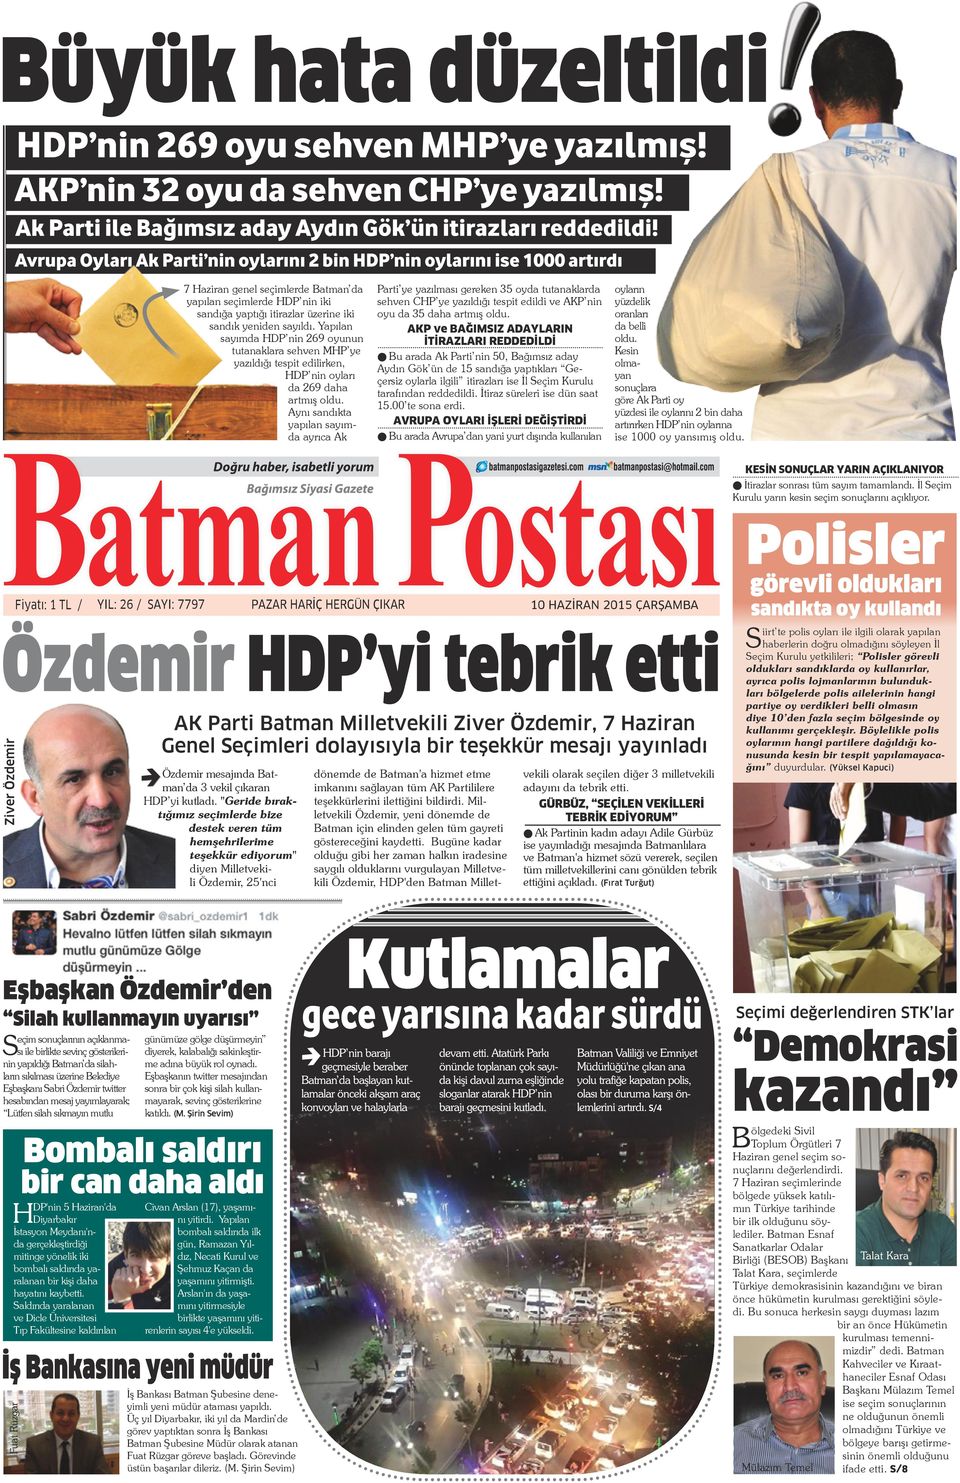 Yapılan sayımda HDP nin 269 oyunun tutanaklara sehven MHP ye yazıldığı tespit edilirken, HDP nin oyları da 269 daha artmış oldu.